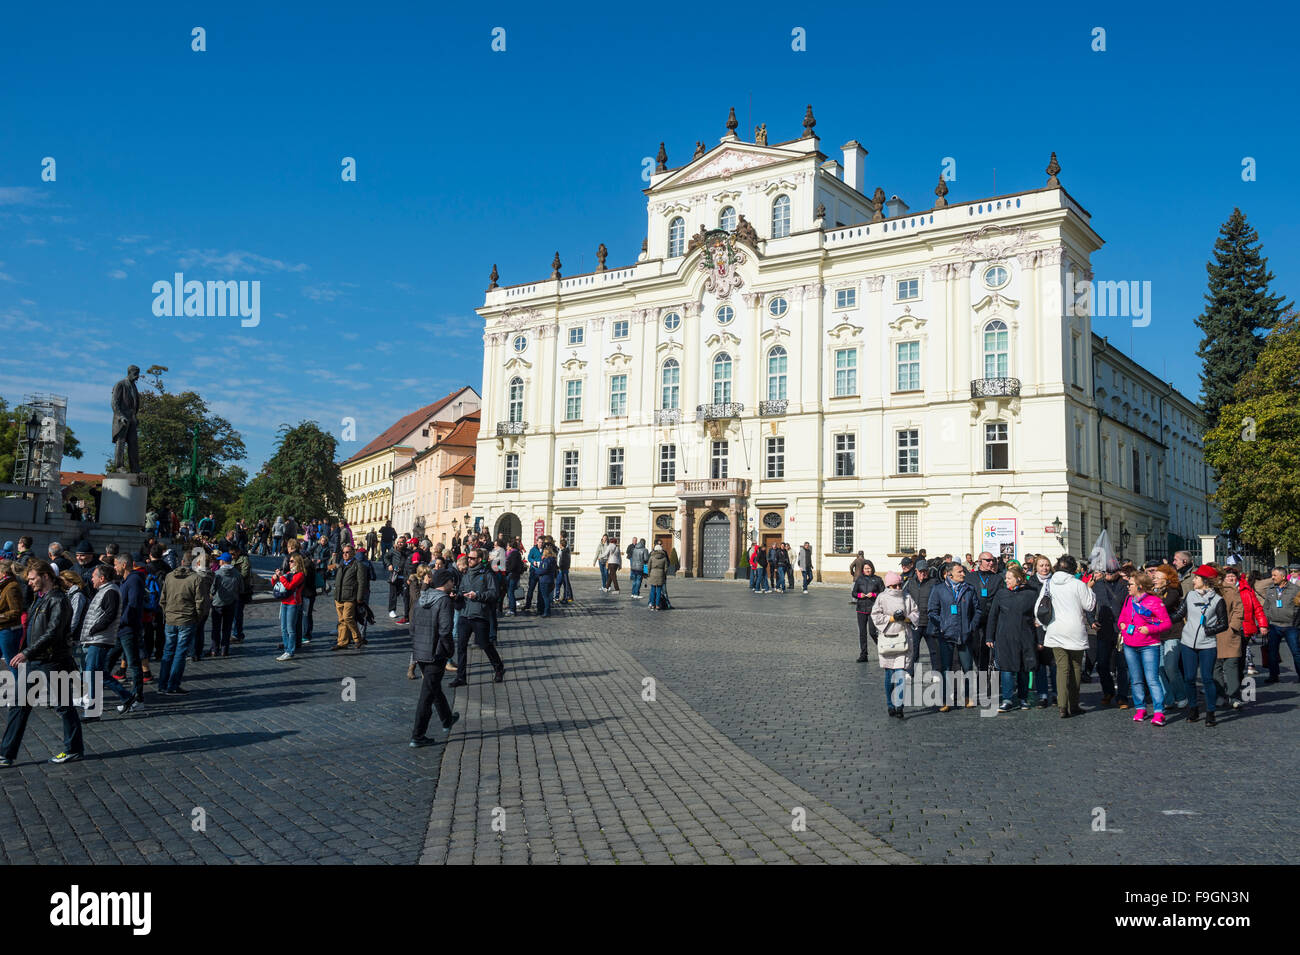 Piazza davanti al castello di Praga, Praga, Repubblica Ceca Foto Stock